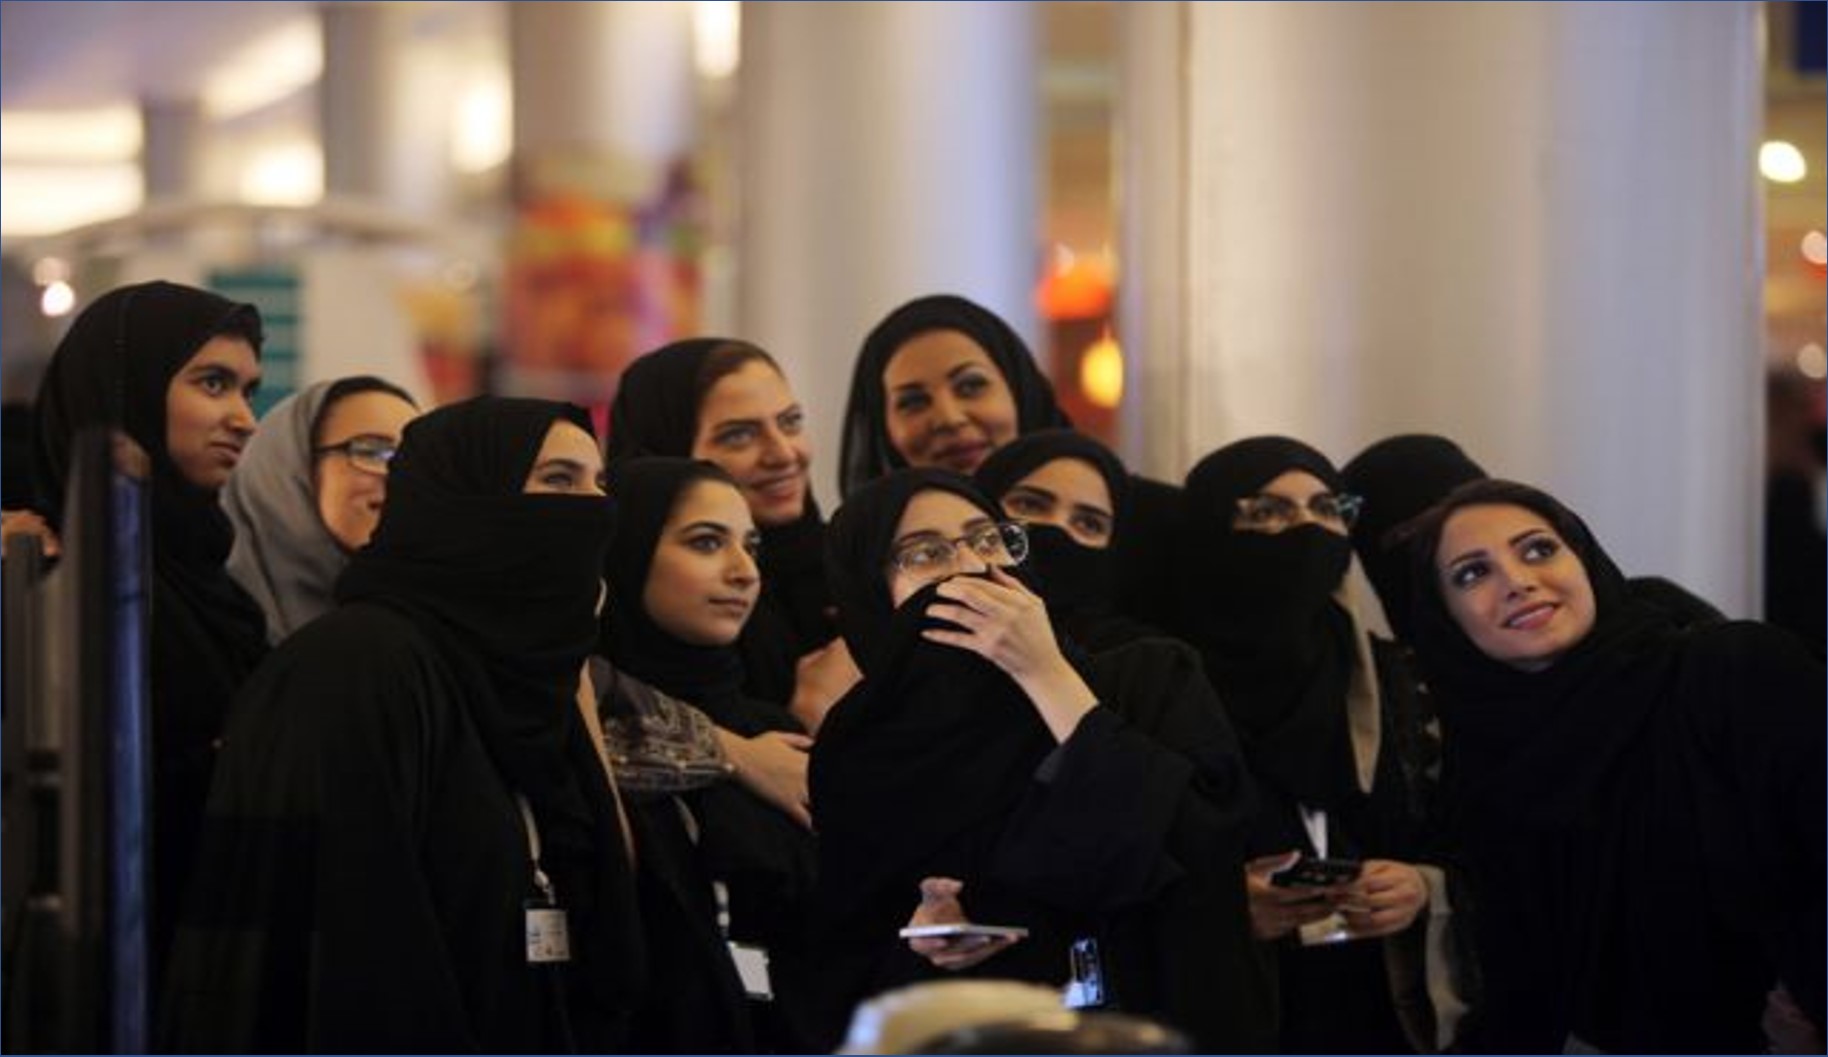 وظائف شاغرة في كبري الشركات بالسعودية | للنساء فقط